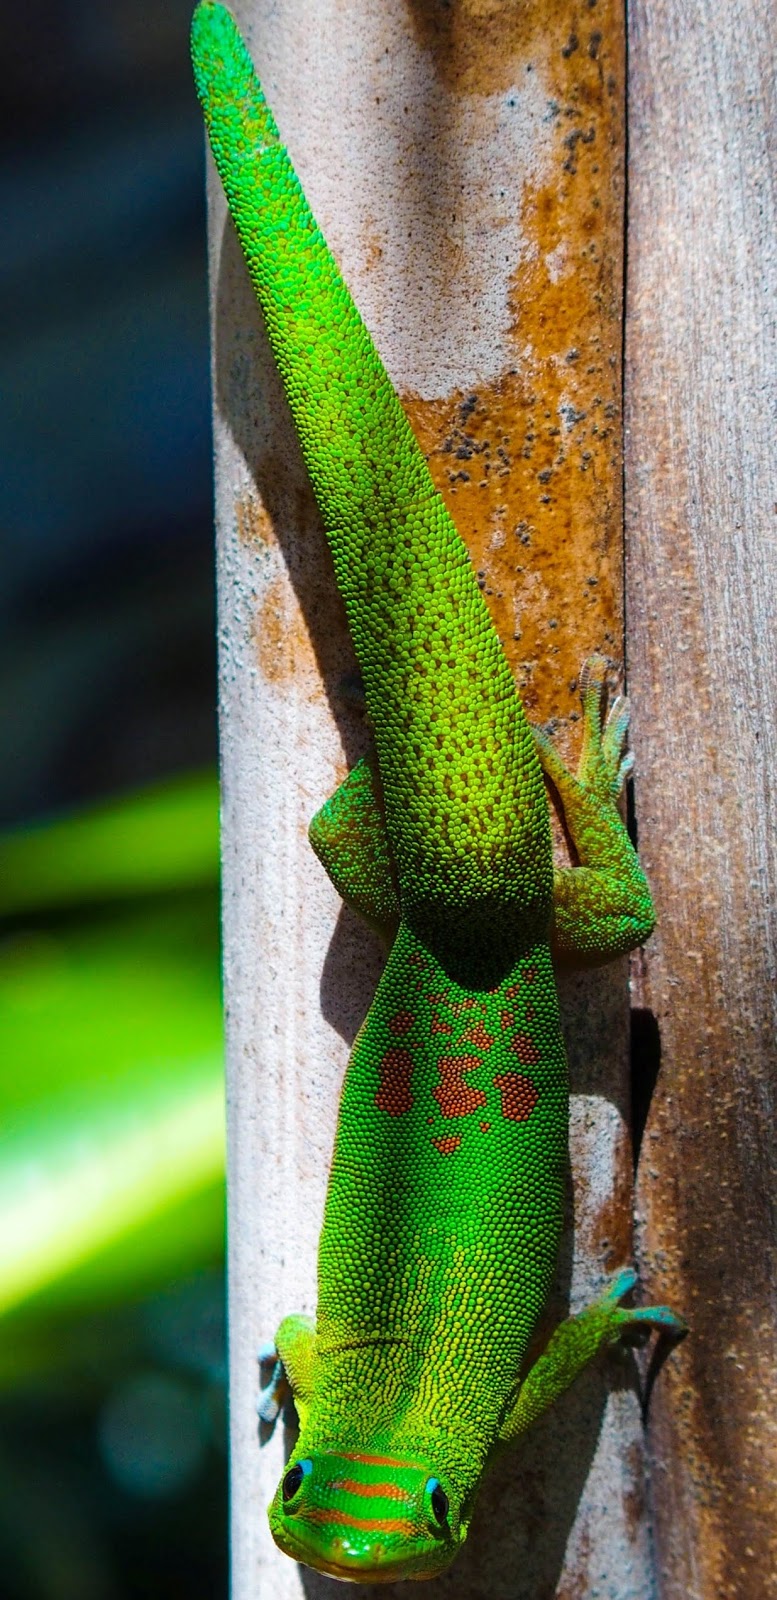 Photo of a green gecko hawaii.